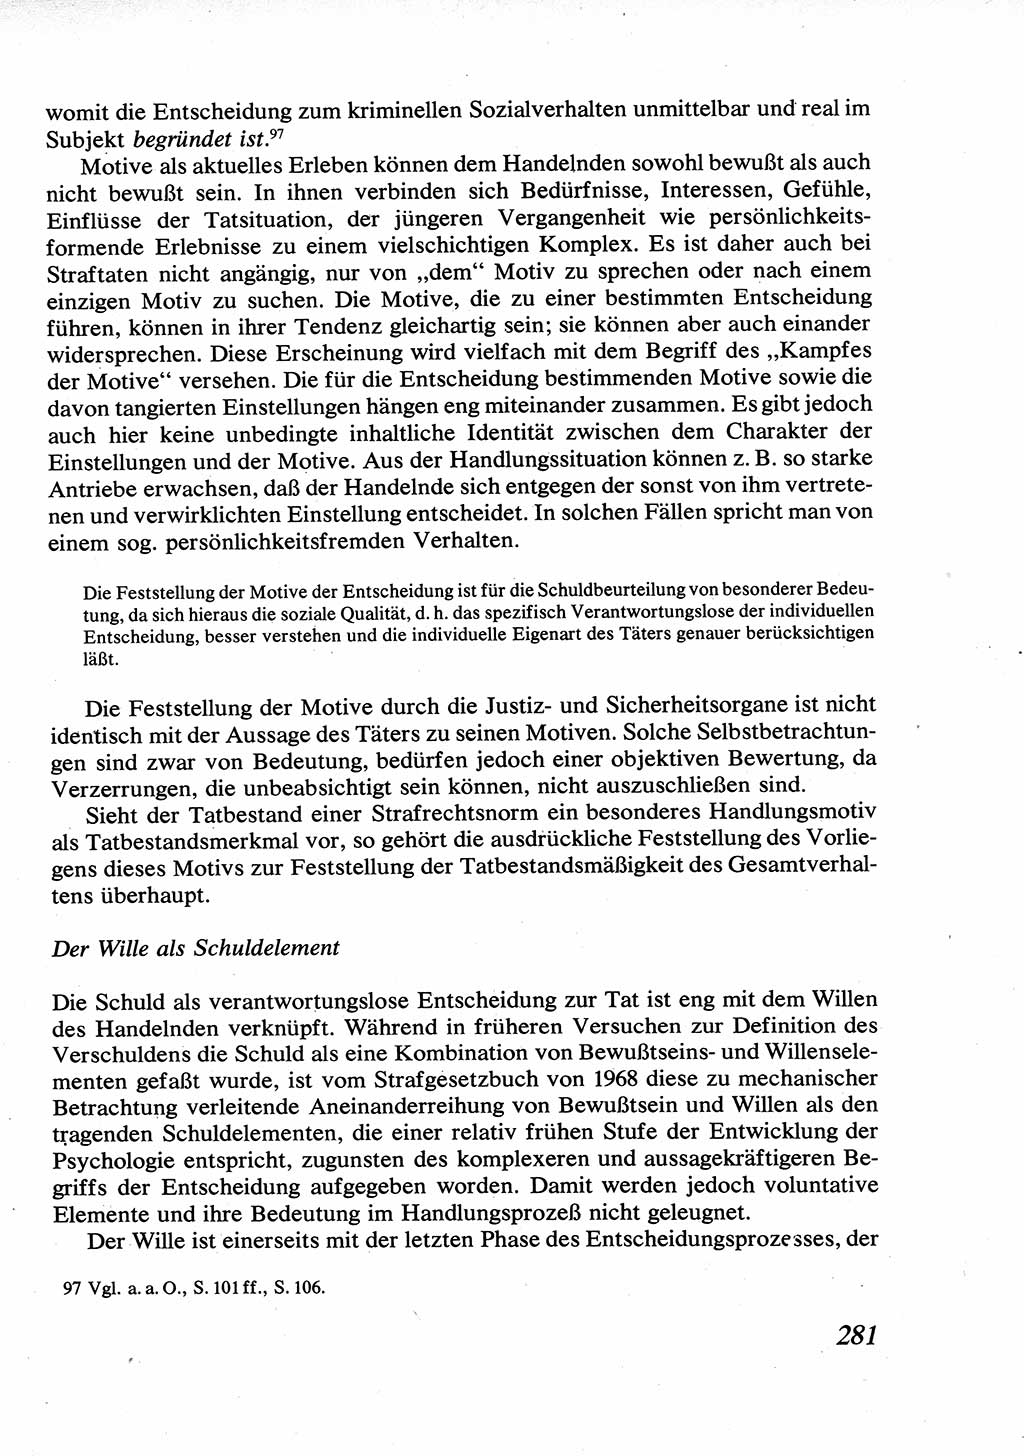 Strafrecht [Deutsche Demokratische Republik (DDR)], Allgemeiner Teil, Lehrbuch 1976, Seite 281 (Strafr. DDR AT Lb. 1976, S. 281)